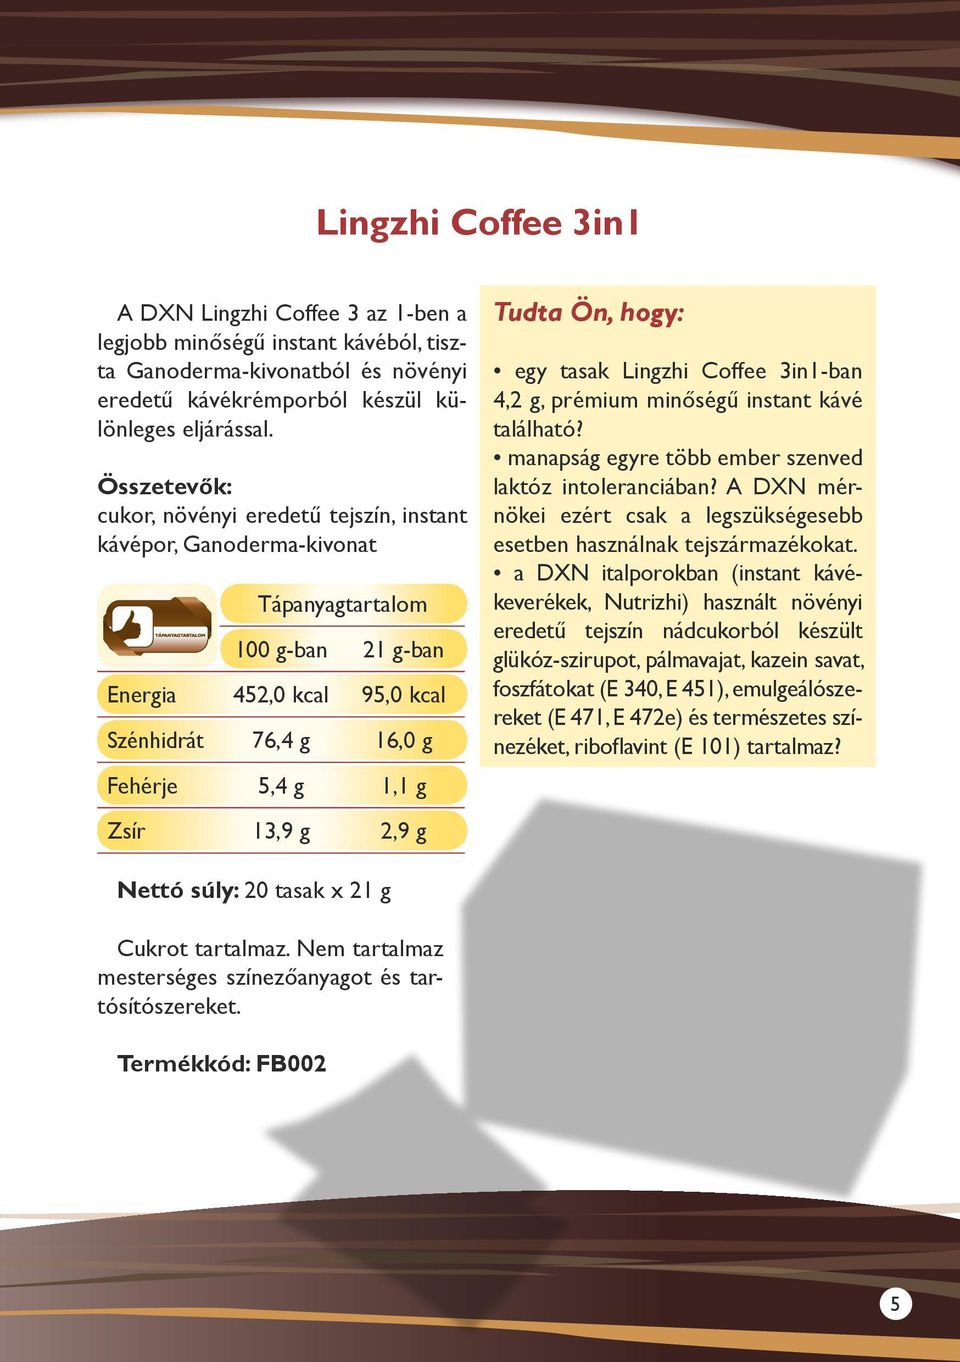 g 2,9 g egy tasak Lingzhi Coffee 3in1-ban 4,2 g, prémium minőségű instant kávé található? manapság egyre több ember szenved laktóz intoleranciában?